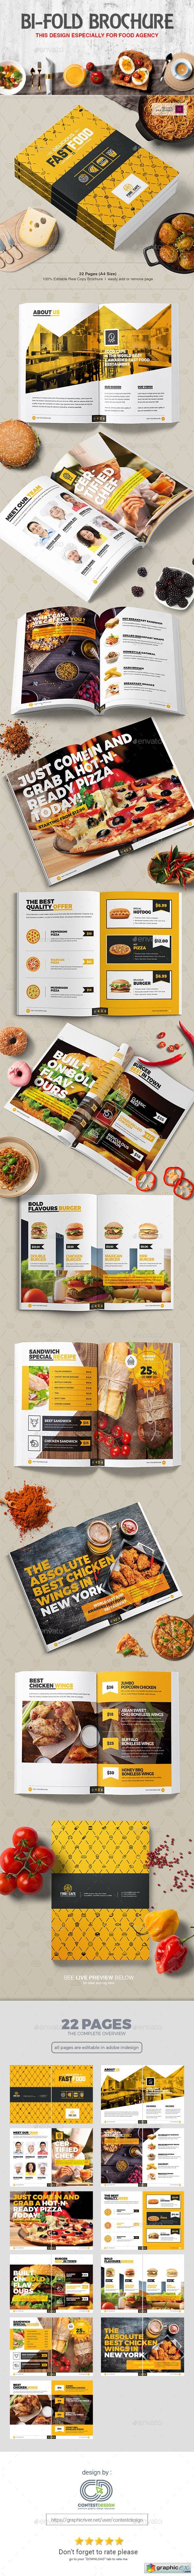 Bi-Fold Brochure Design Template for Fast Food / Restaurants / Cafe